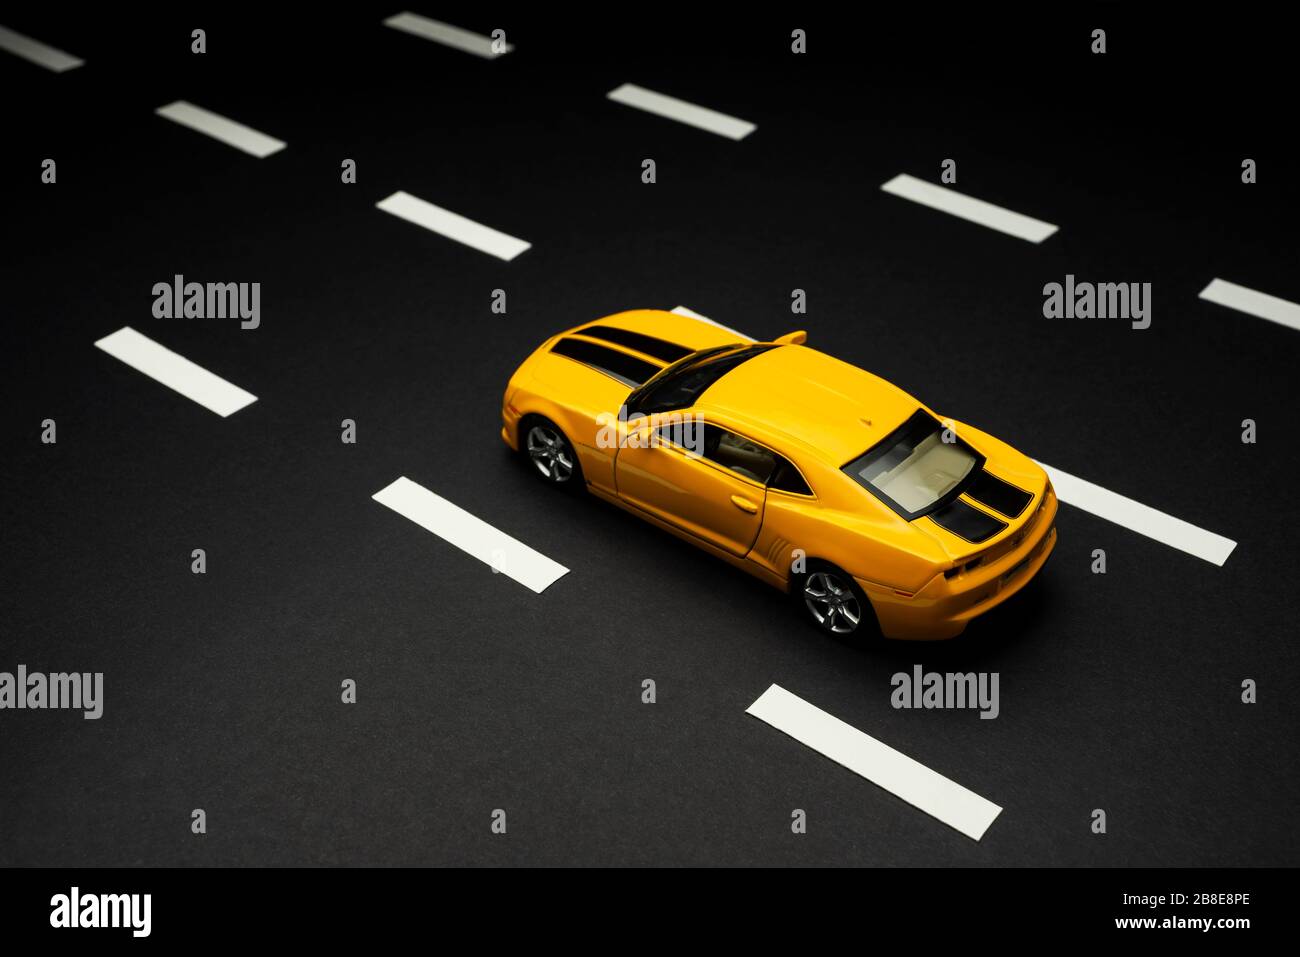 Izmir, Turquie - 28 juillet 2019: Vue de dessus et arrière d'une voiture de sport jouet jaune Chevrolet Camaro avec deux portes et bandes noires sur une route d'asphalte avec Banque D'Images